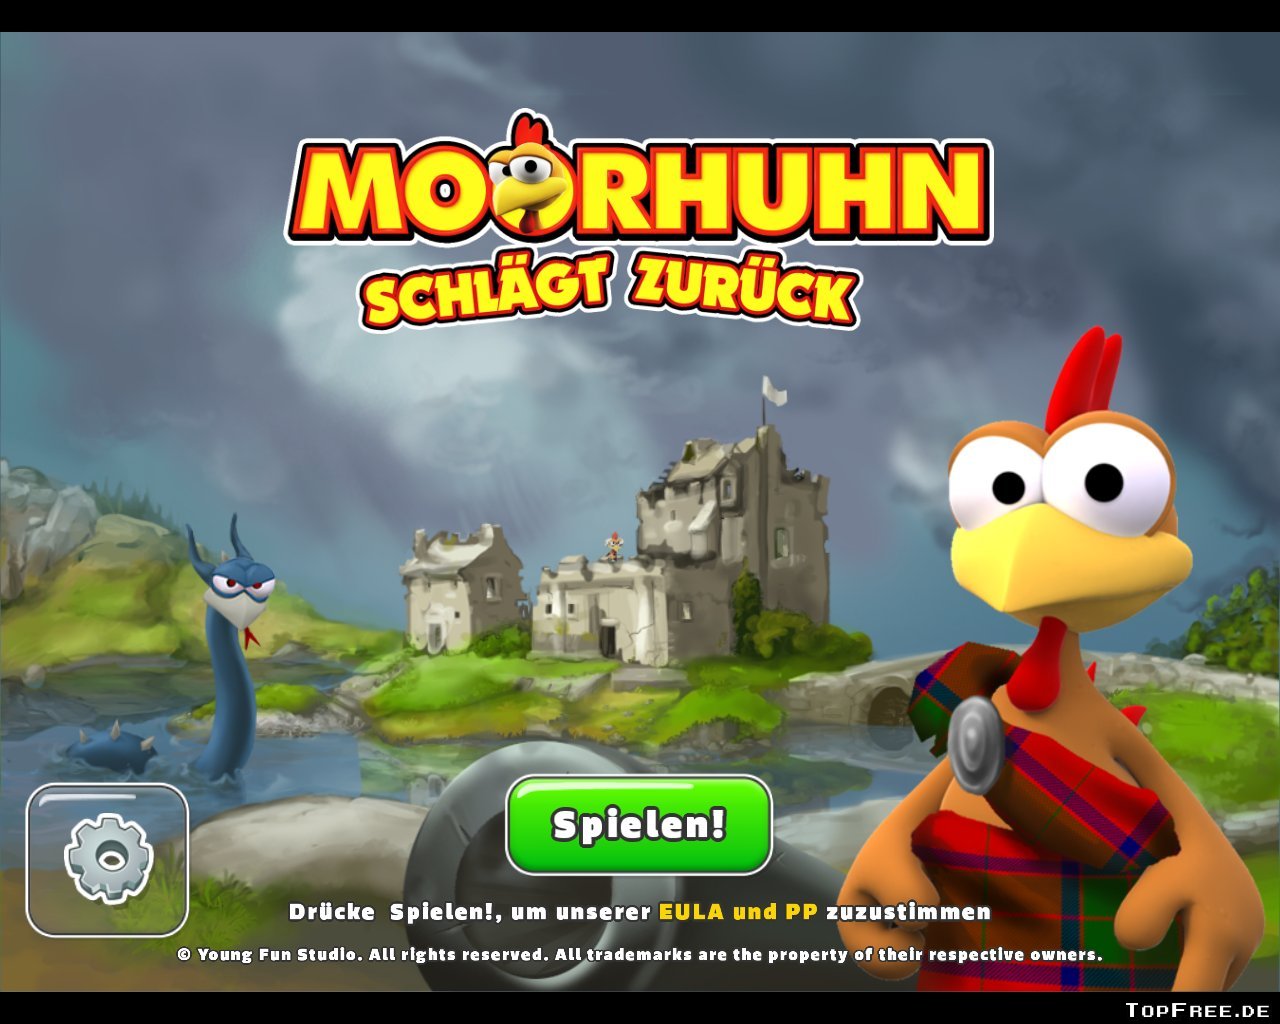 Mohrhun